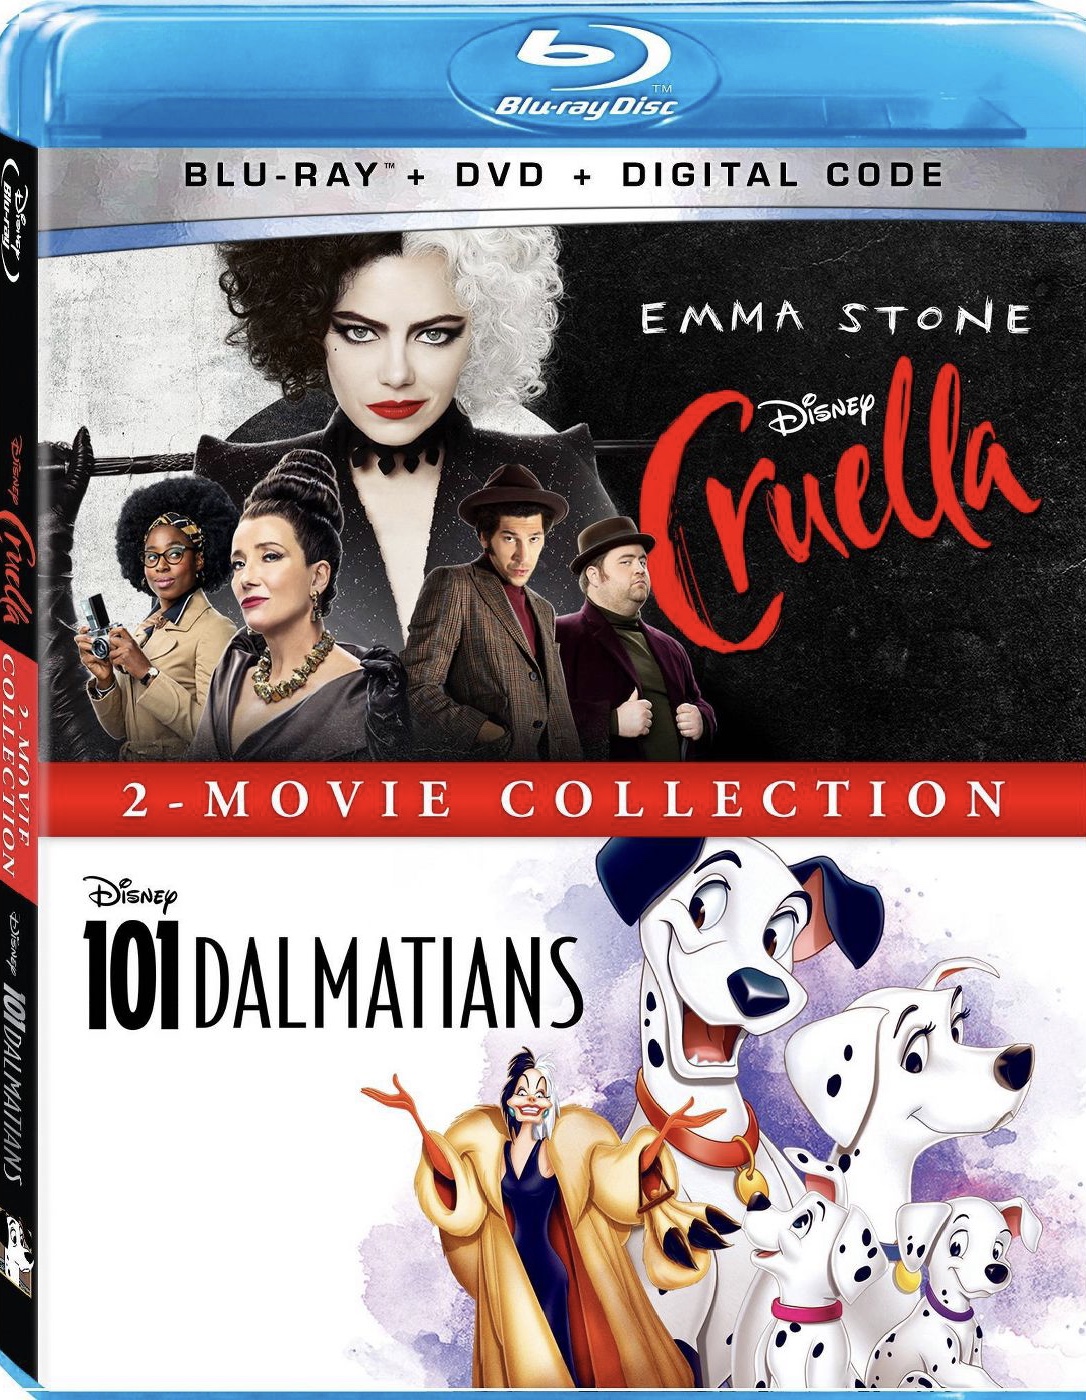 Movie Minute: Cruella 2021 (Emma Stone) - It's A Small World Blog